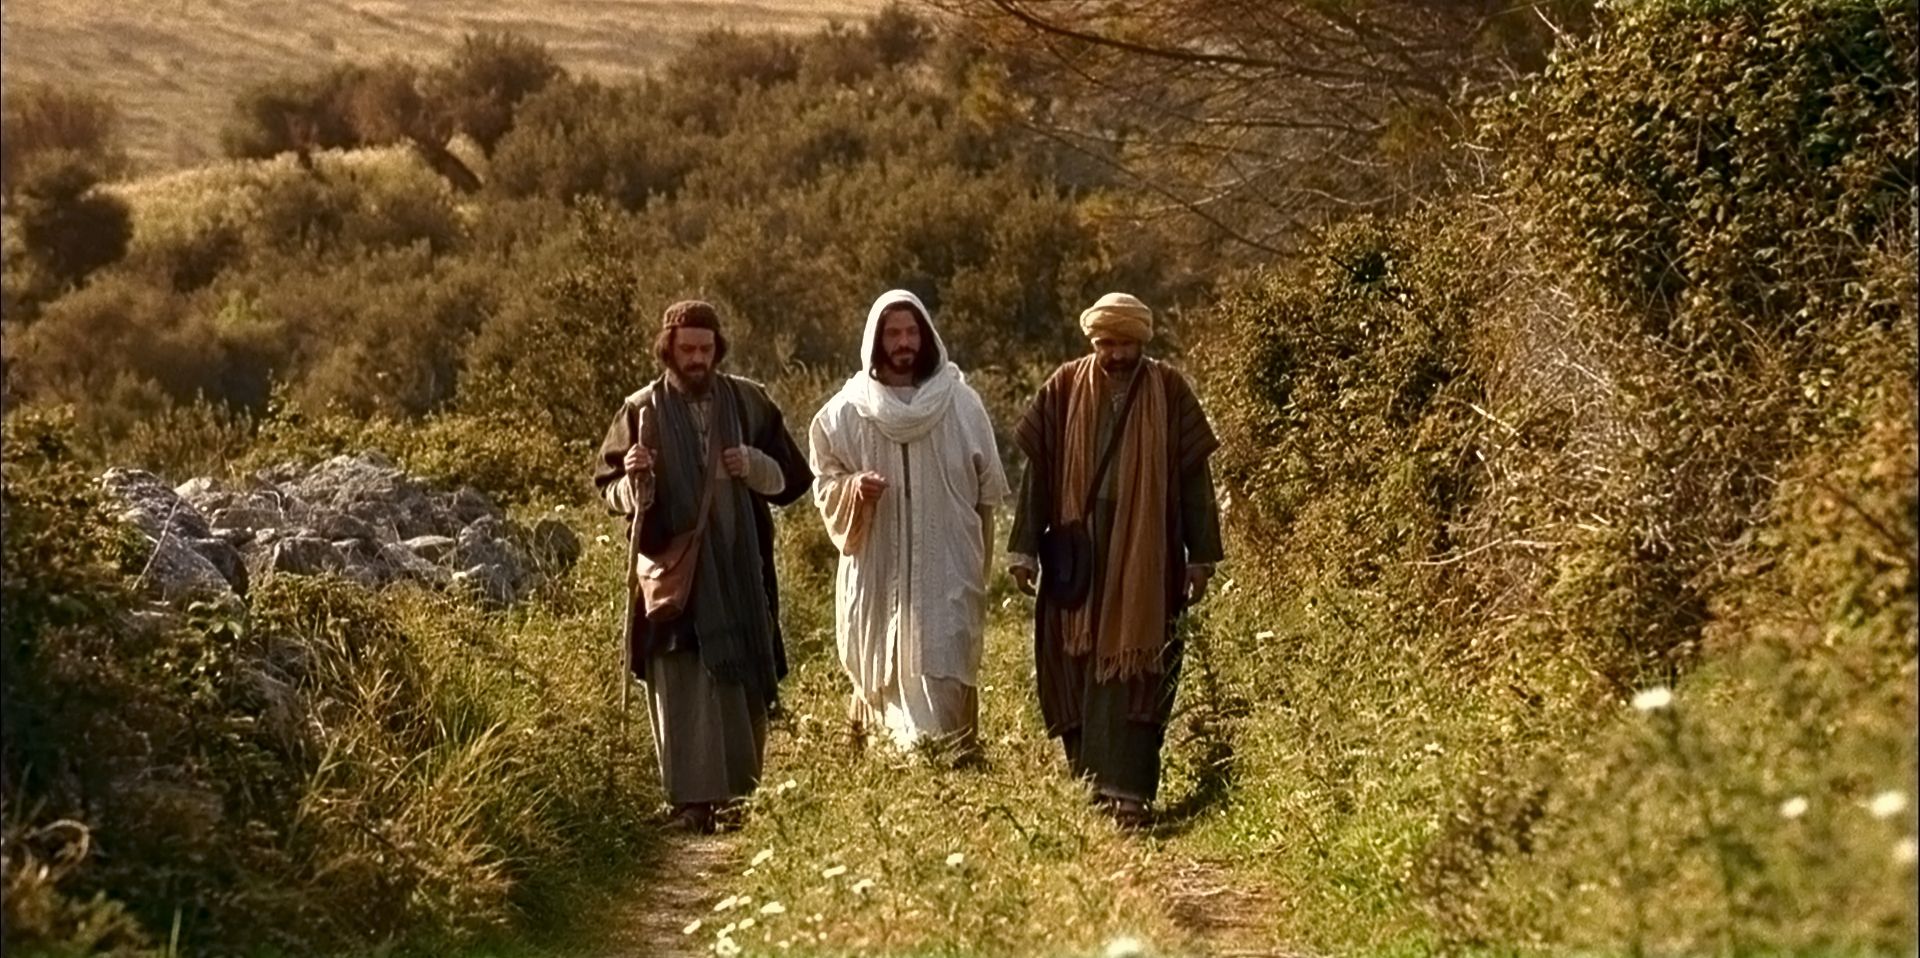 Cristo se aparece a dos discípulos.